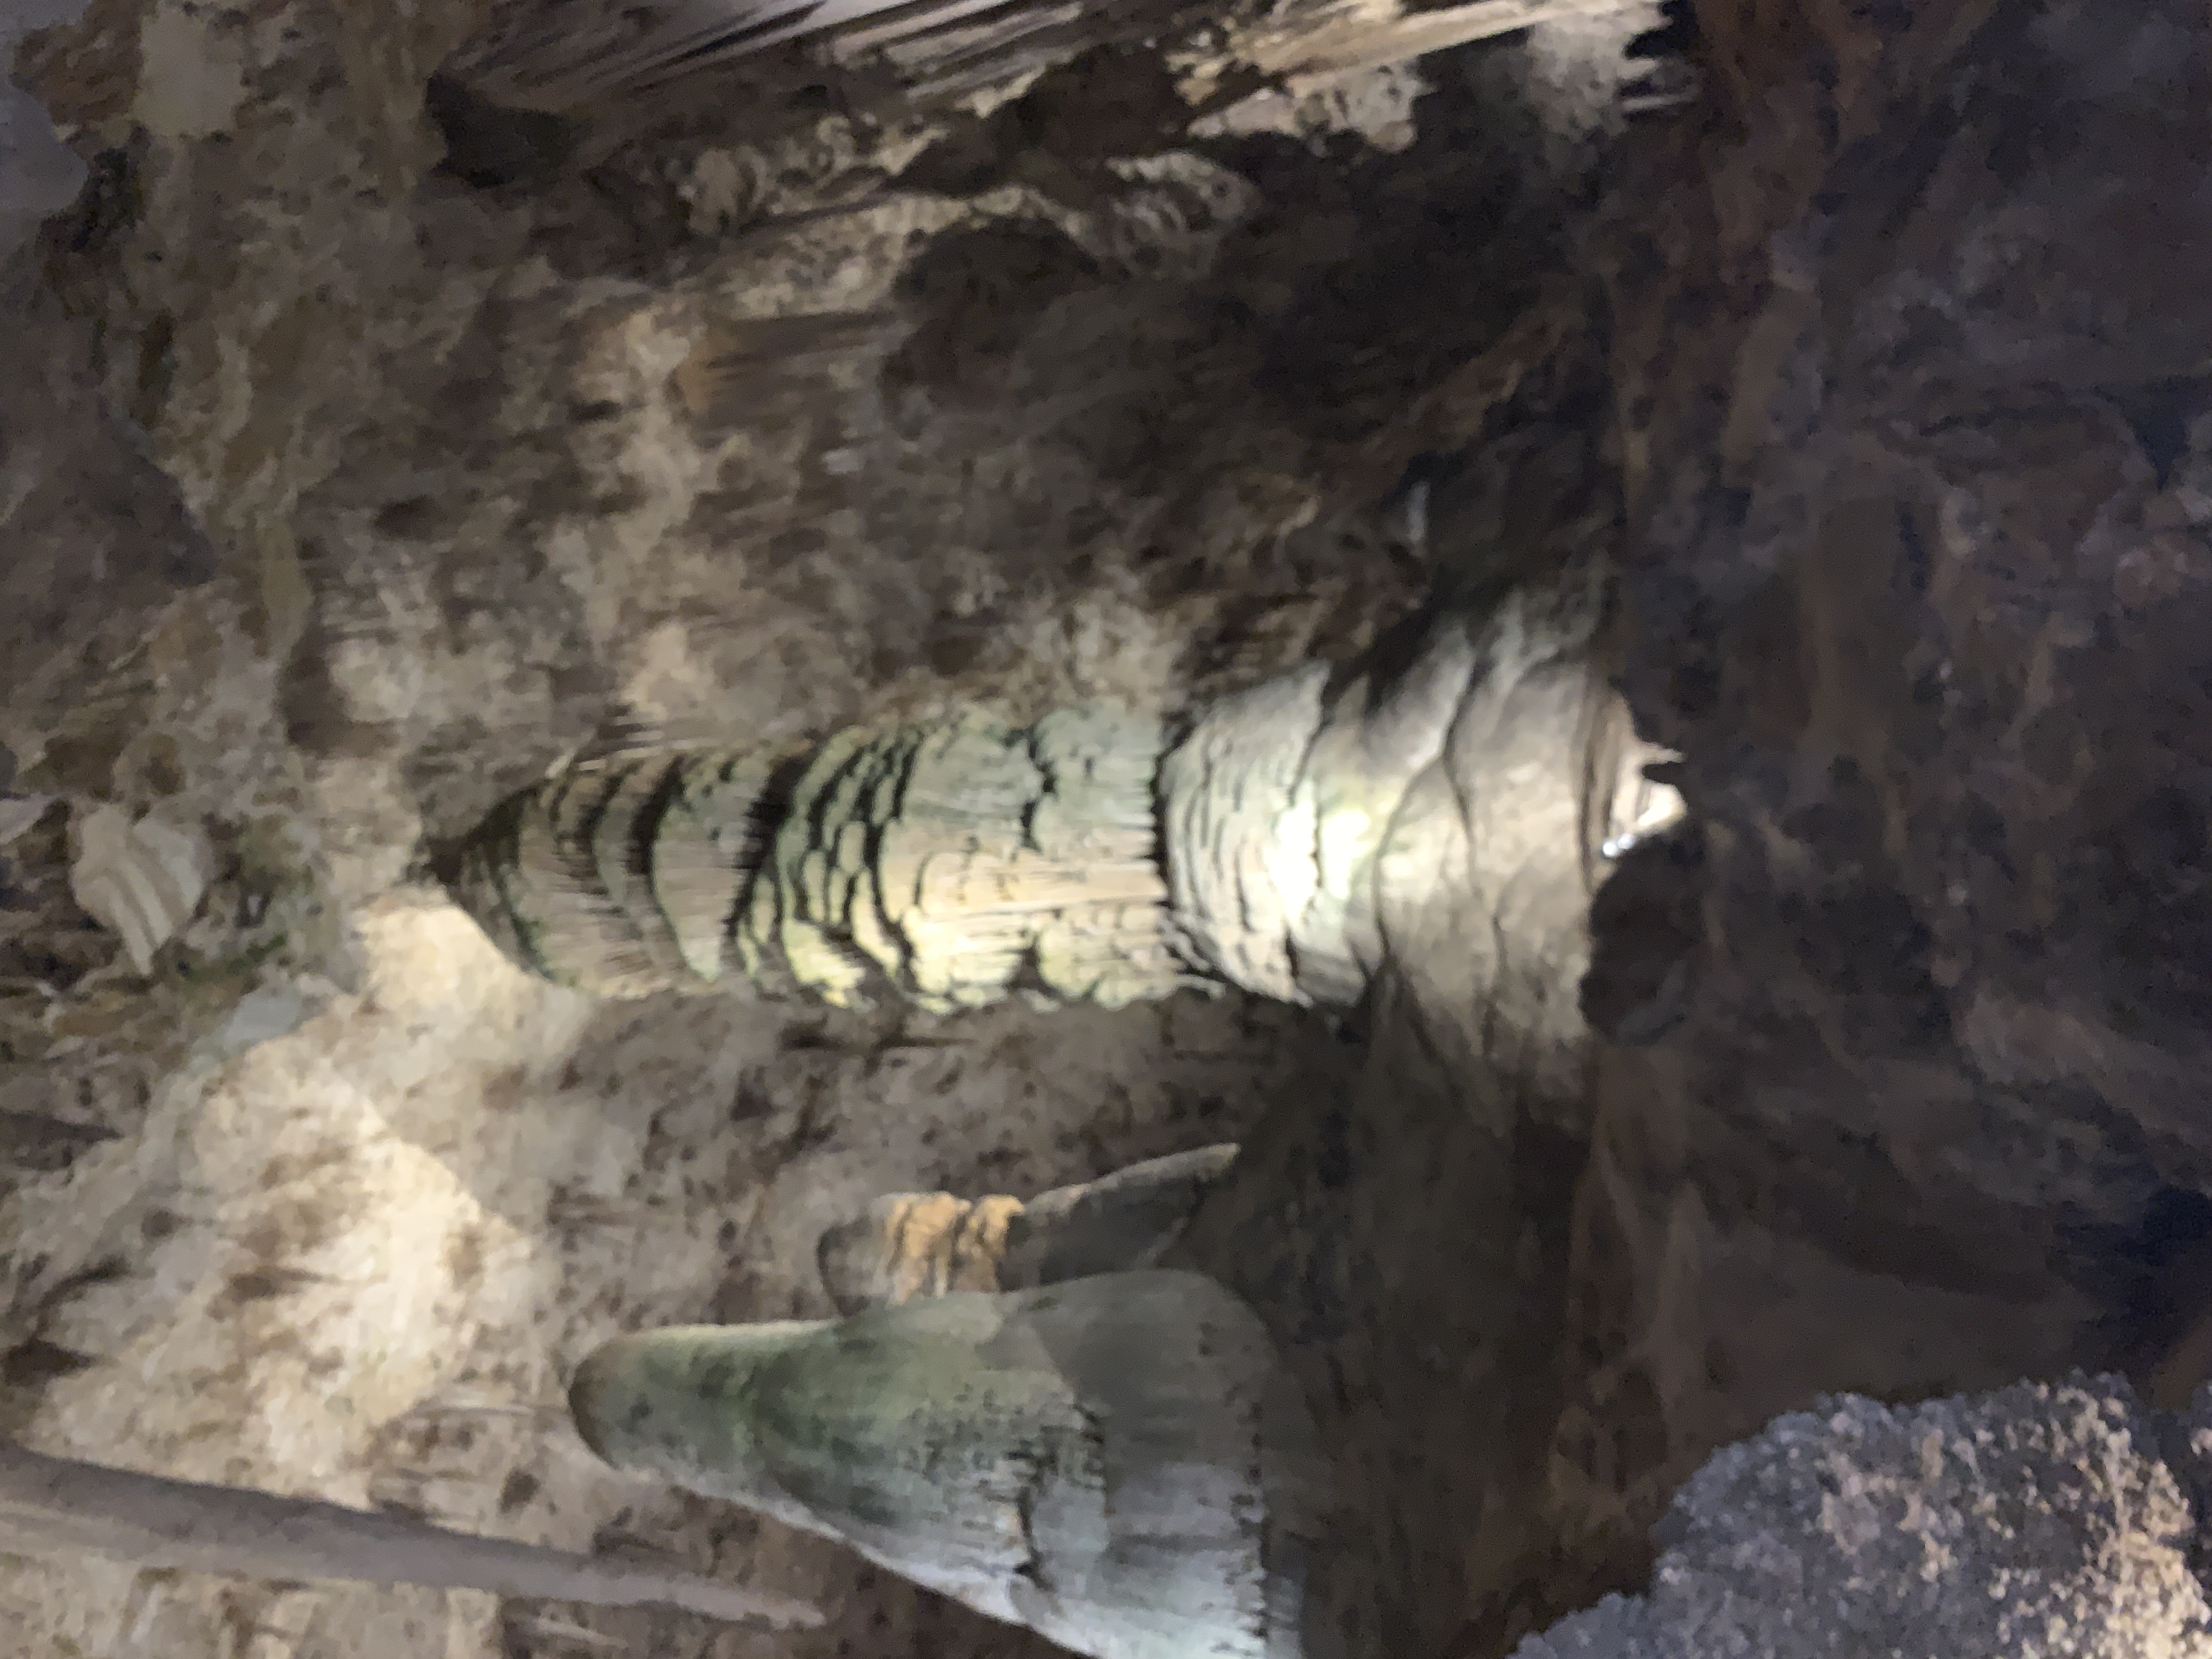 This stalagmite is 62 feet tall at Carlsbad Caverns National Park